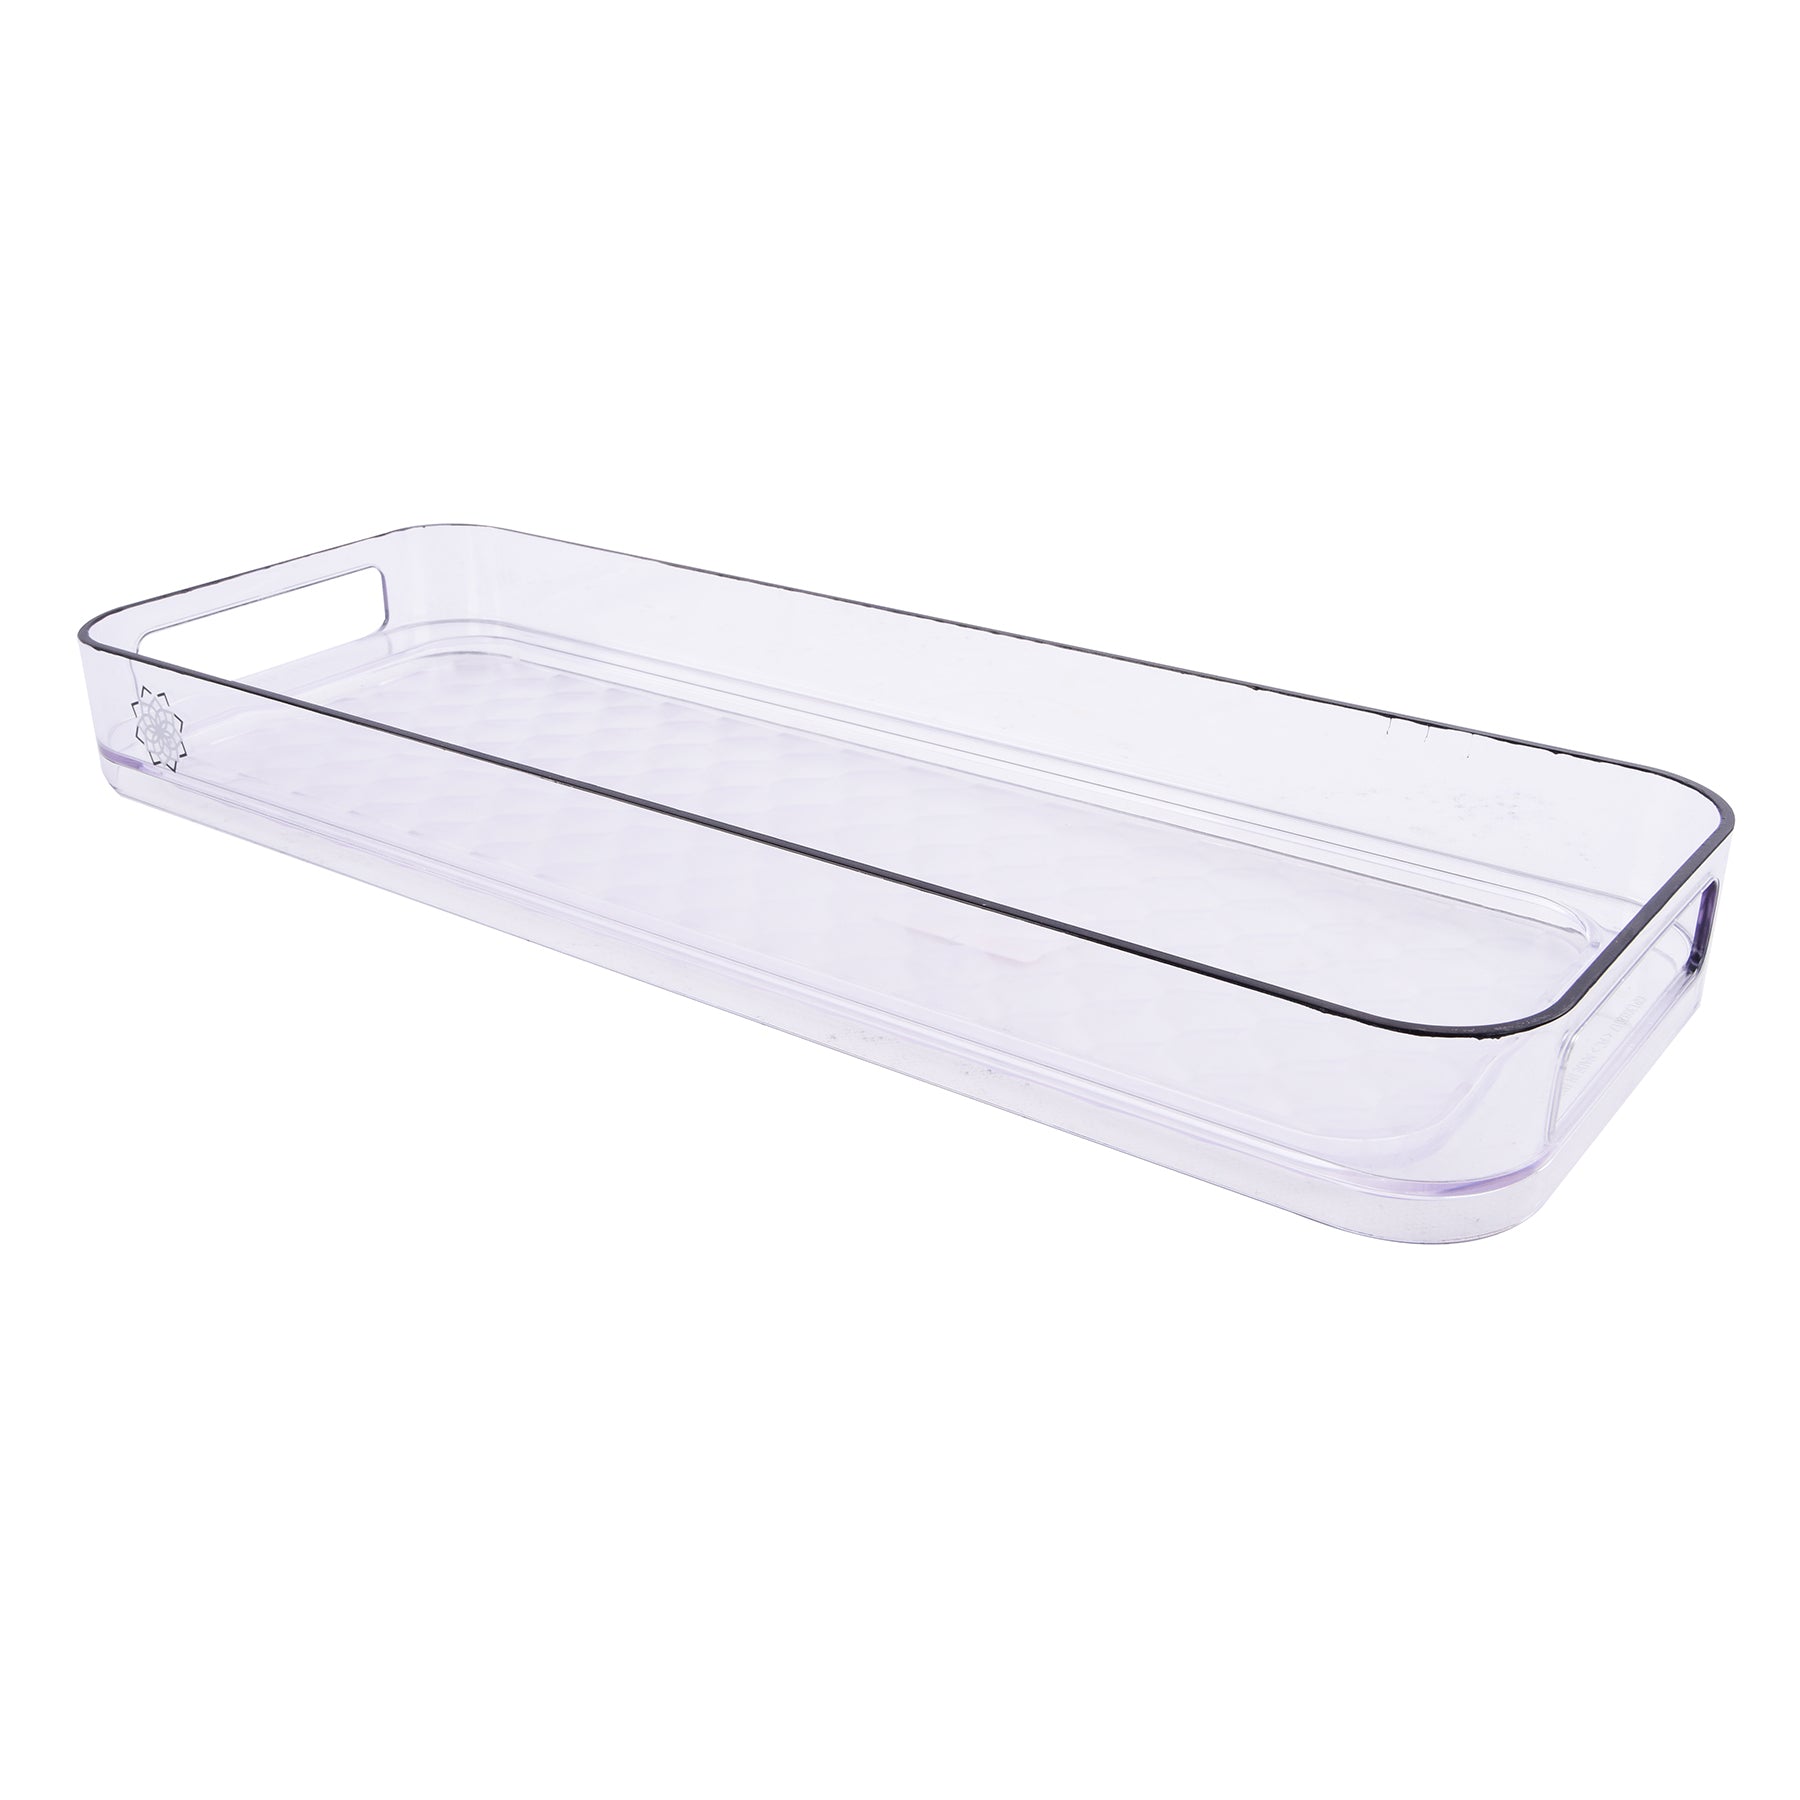 Slim Organizer tray - Clear